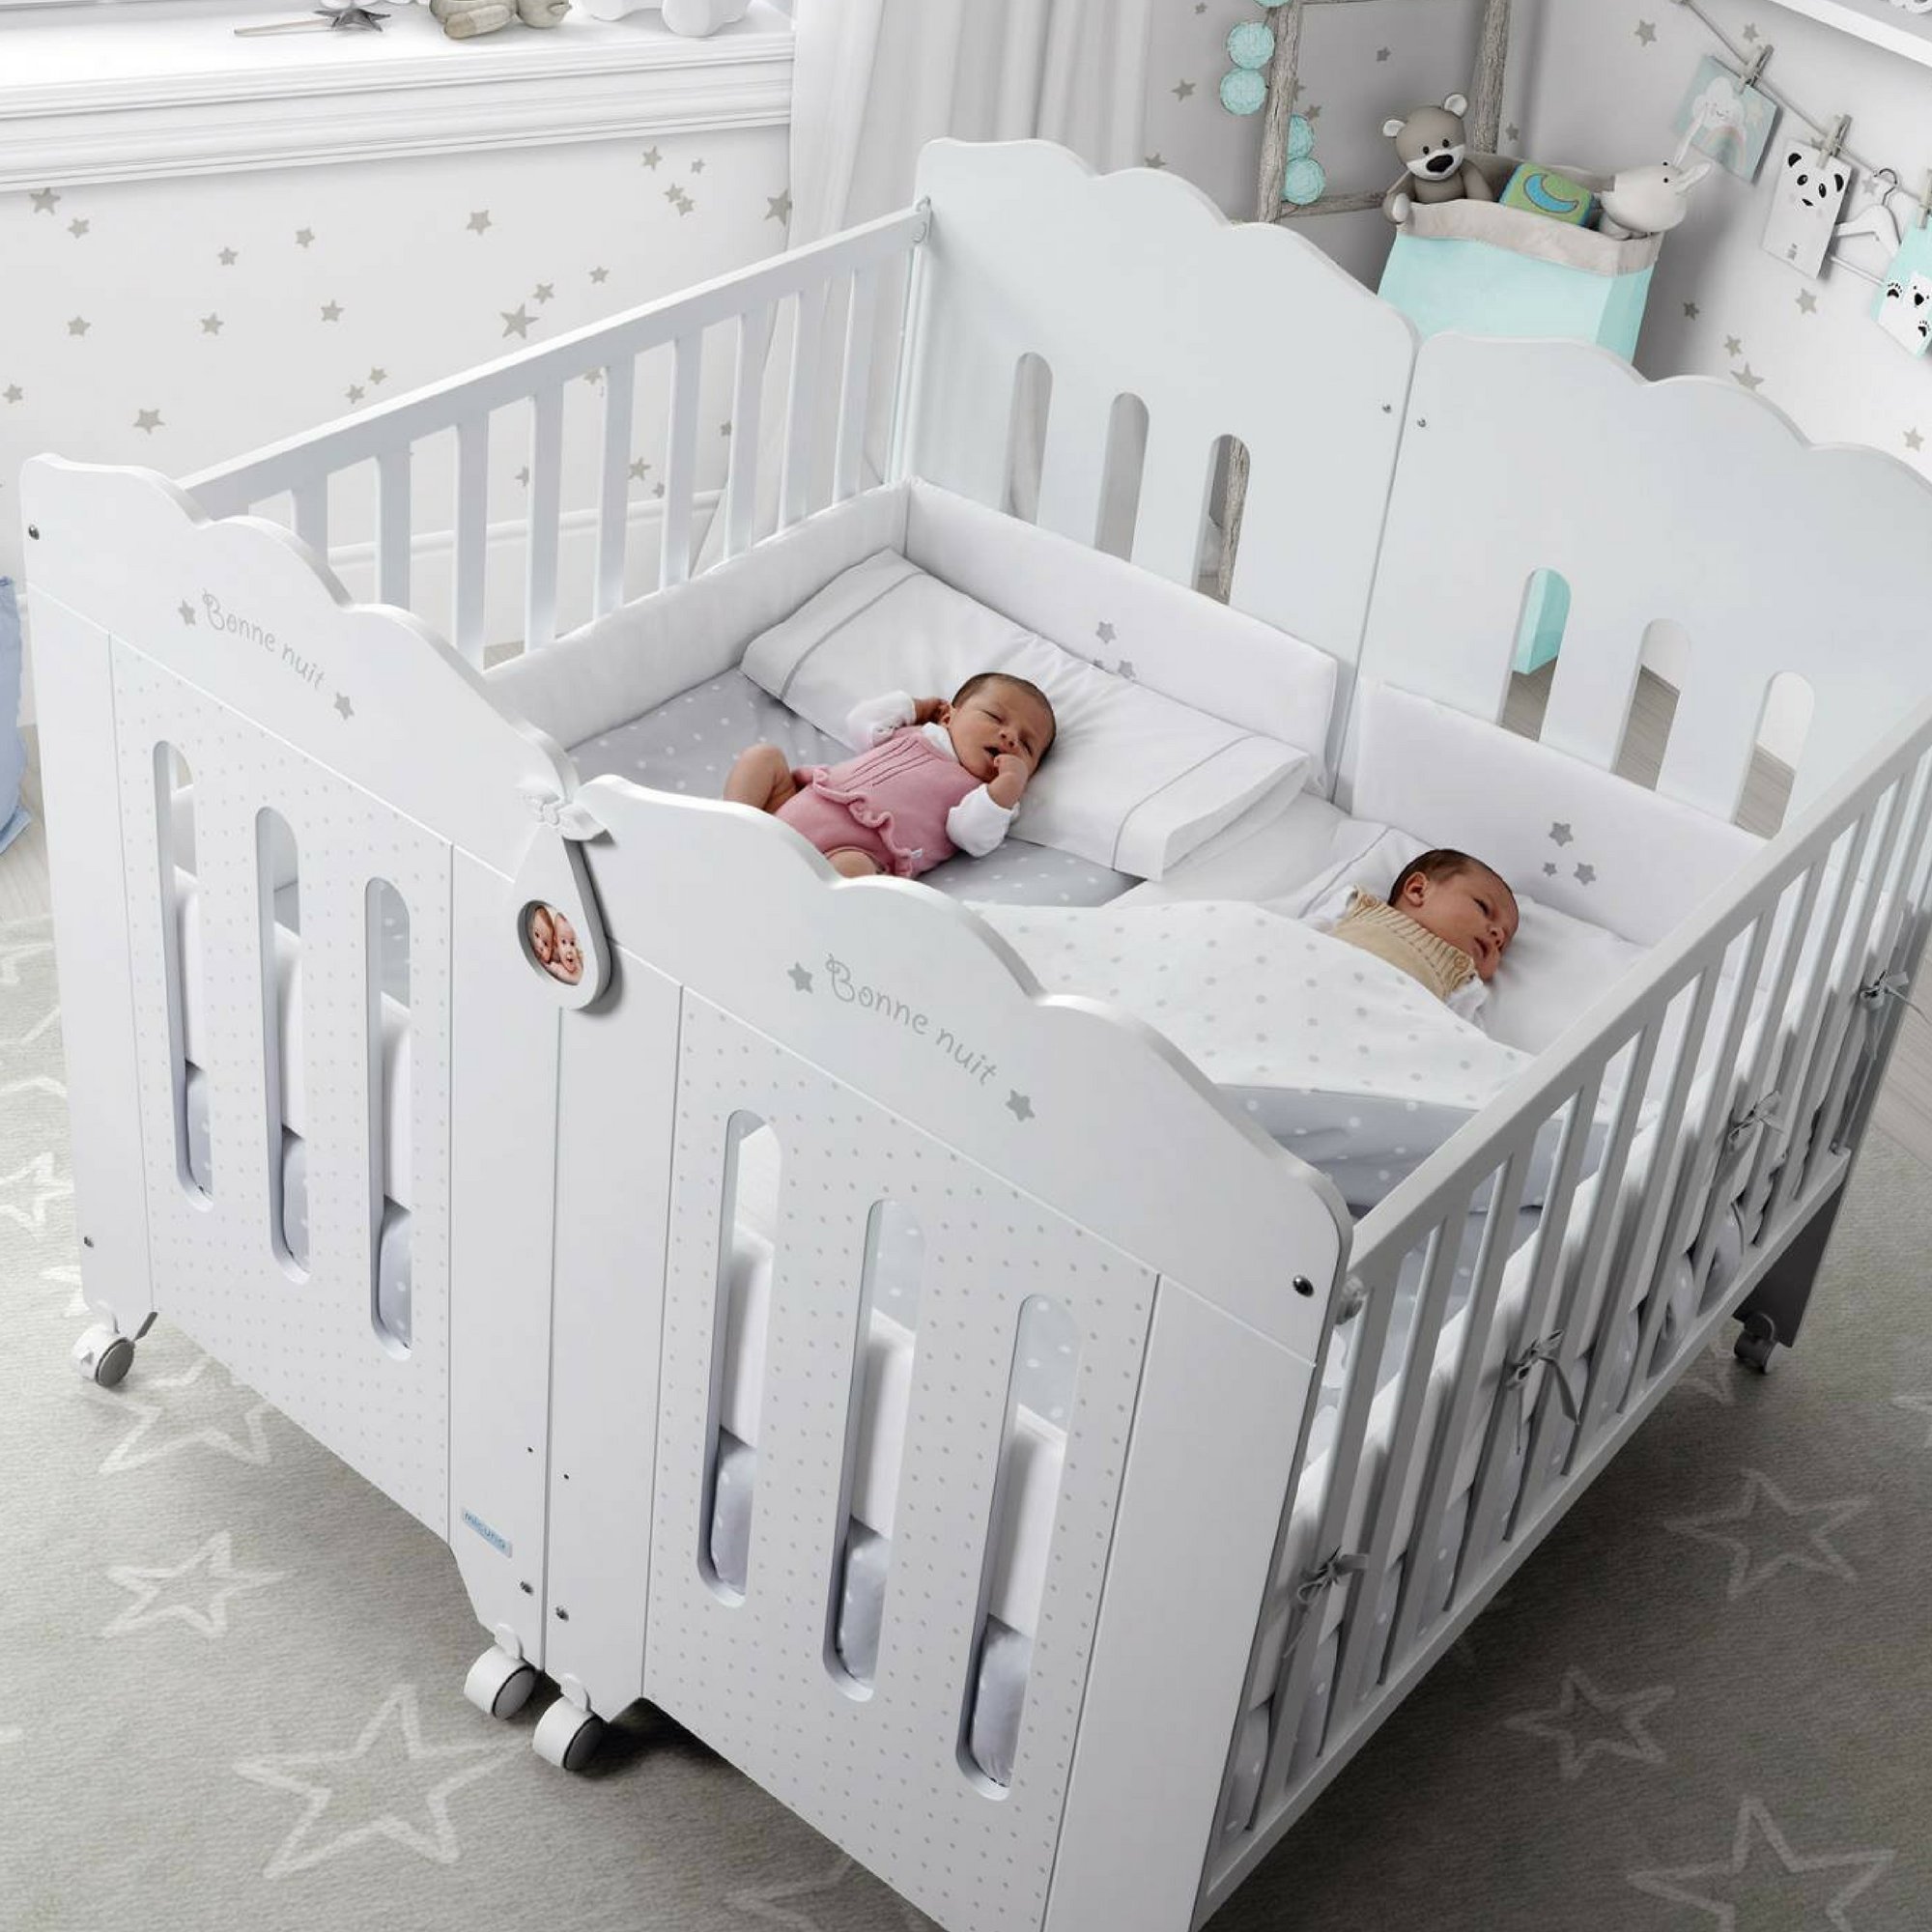 Le trésor de bébé on X: #JeDédoublerais un lit bébé pour les jumeaux <3  #wonderful @micuna_com   / X